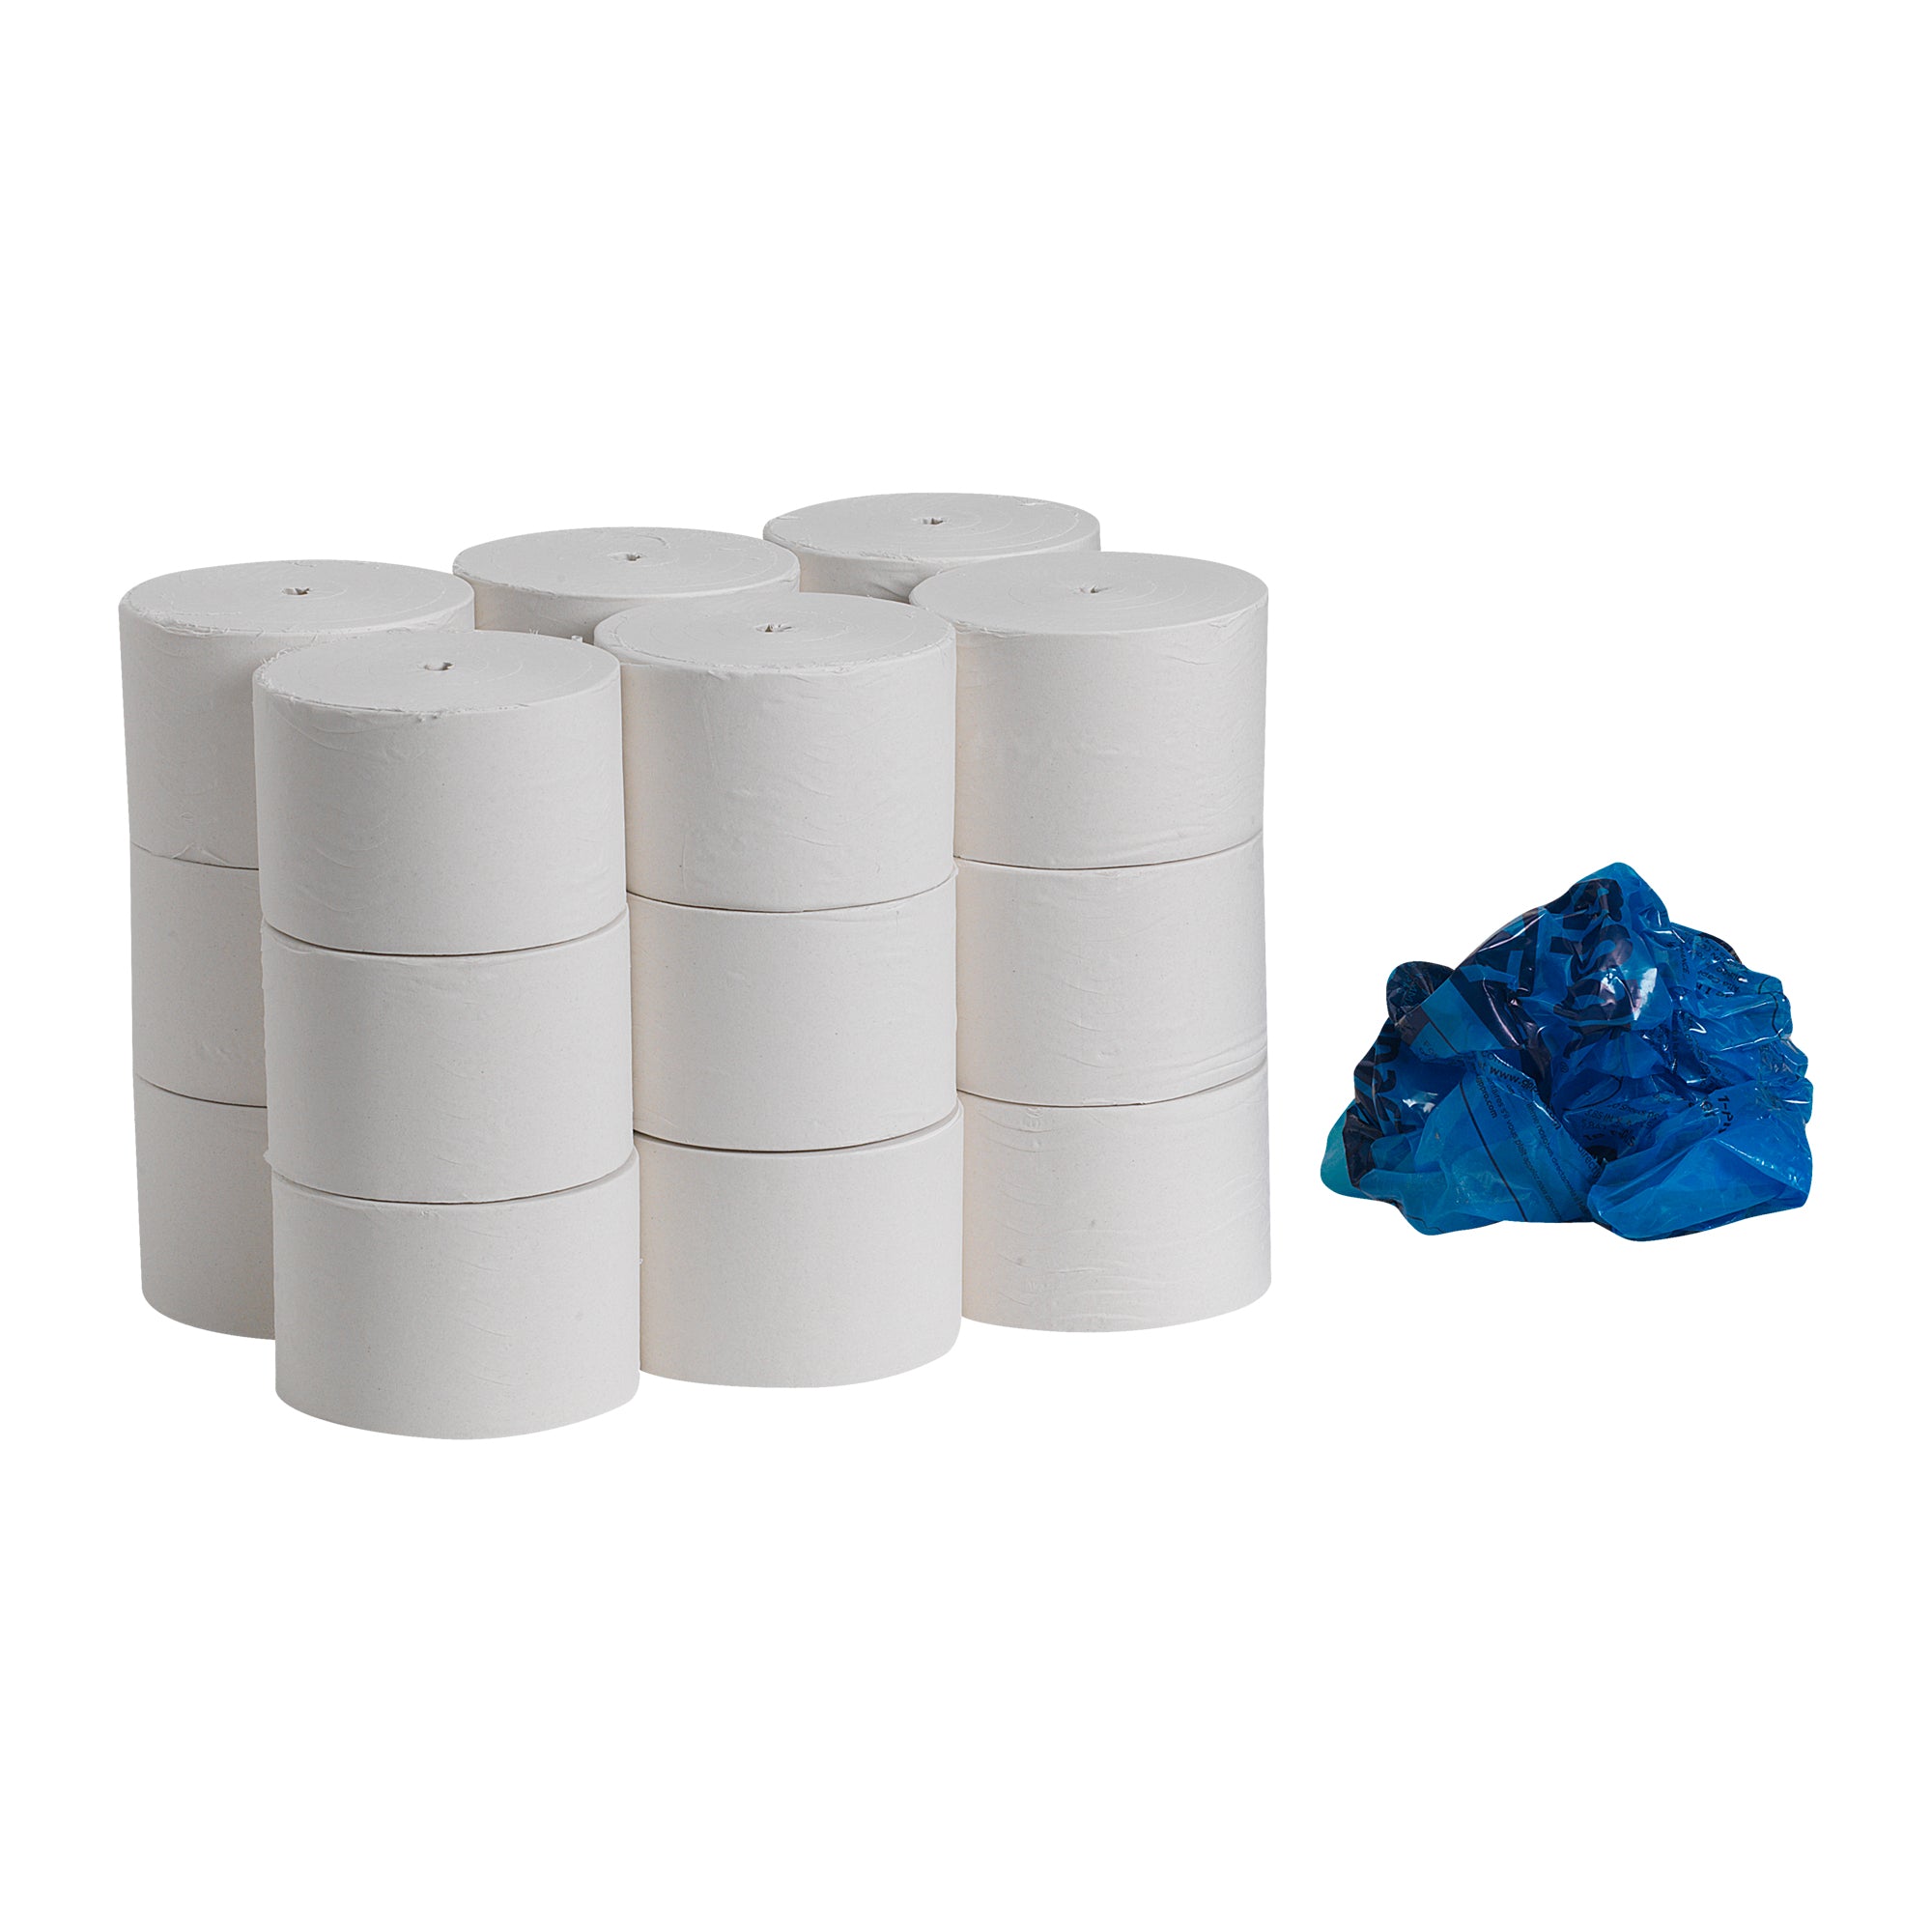 נייר טואלט ממוחזר חד שכבתי Compact® ללא ליבות, לבן, (18 גלילים של 304.80 מטרים סהכ 5486.40 מטרים) 54,000 גליונות למארז